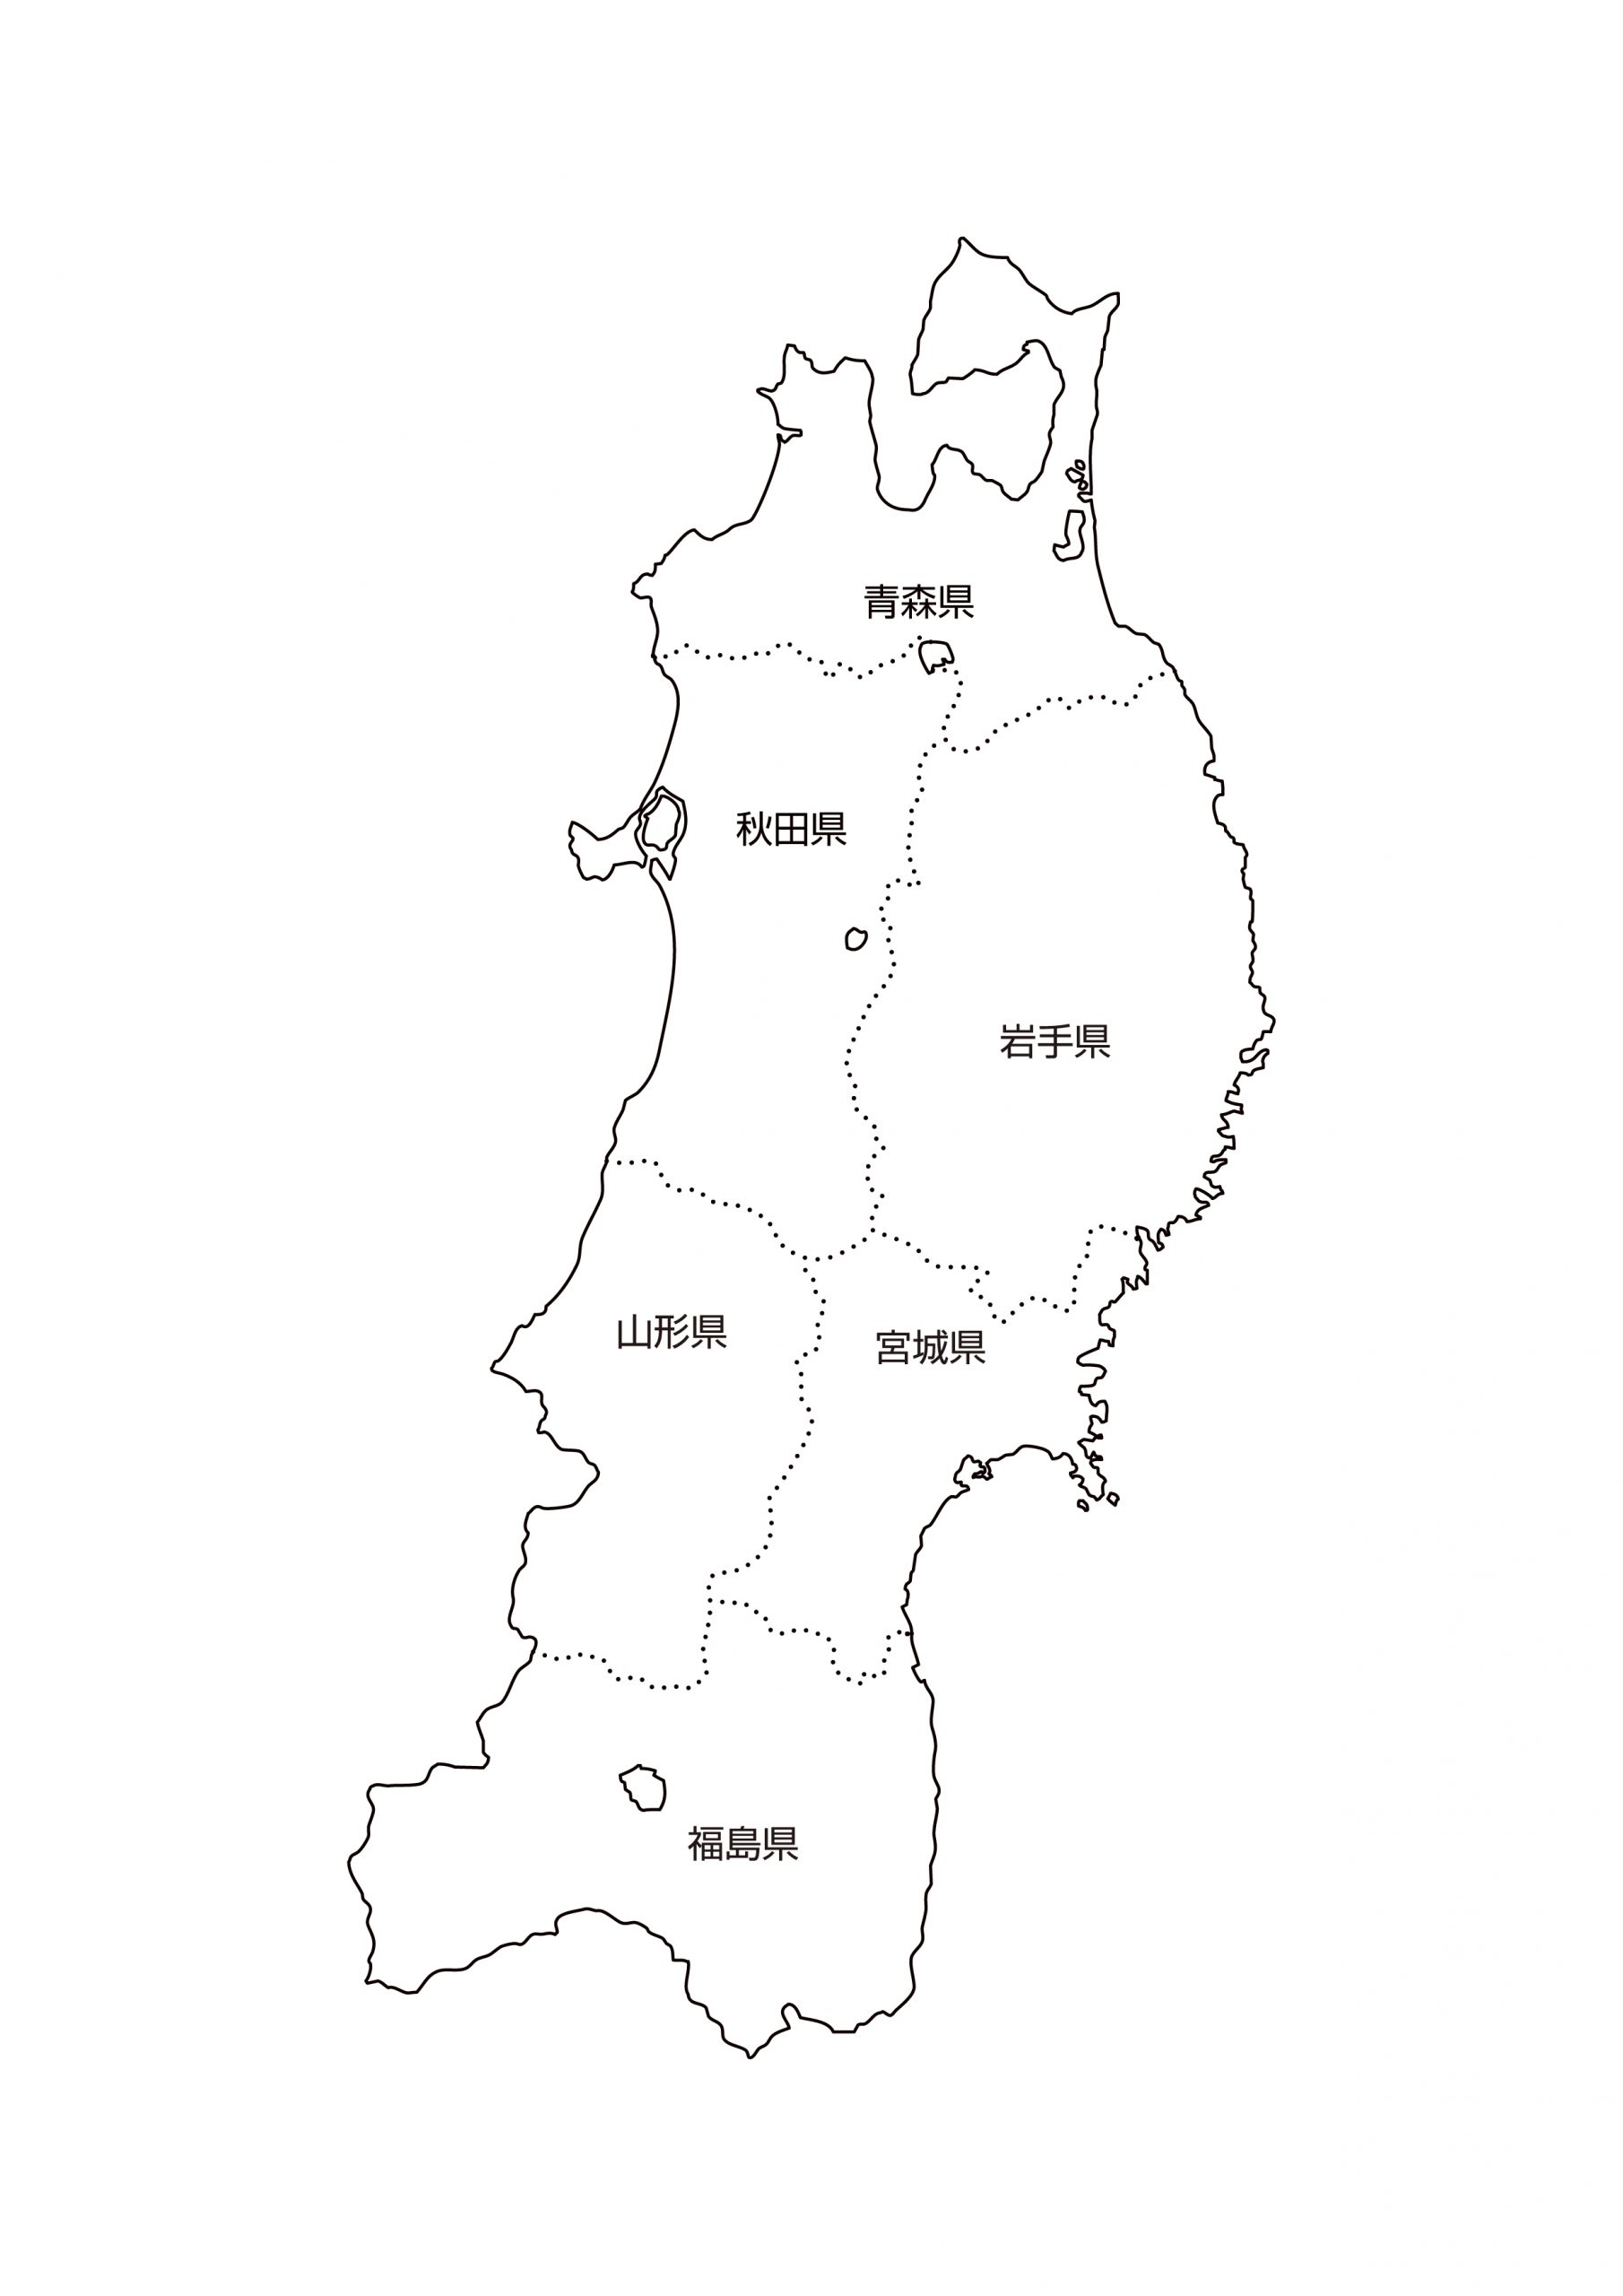 東北地方6県の地図イラストを無料ダウンロード